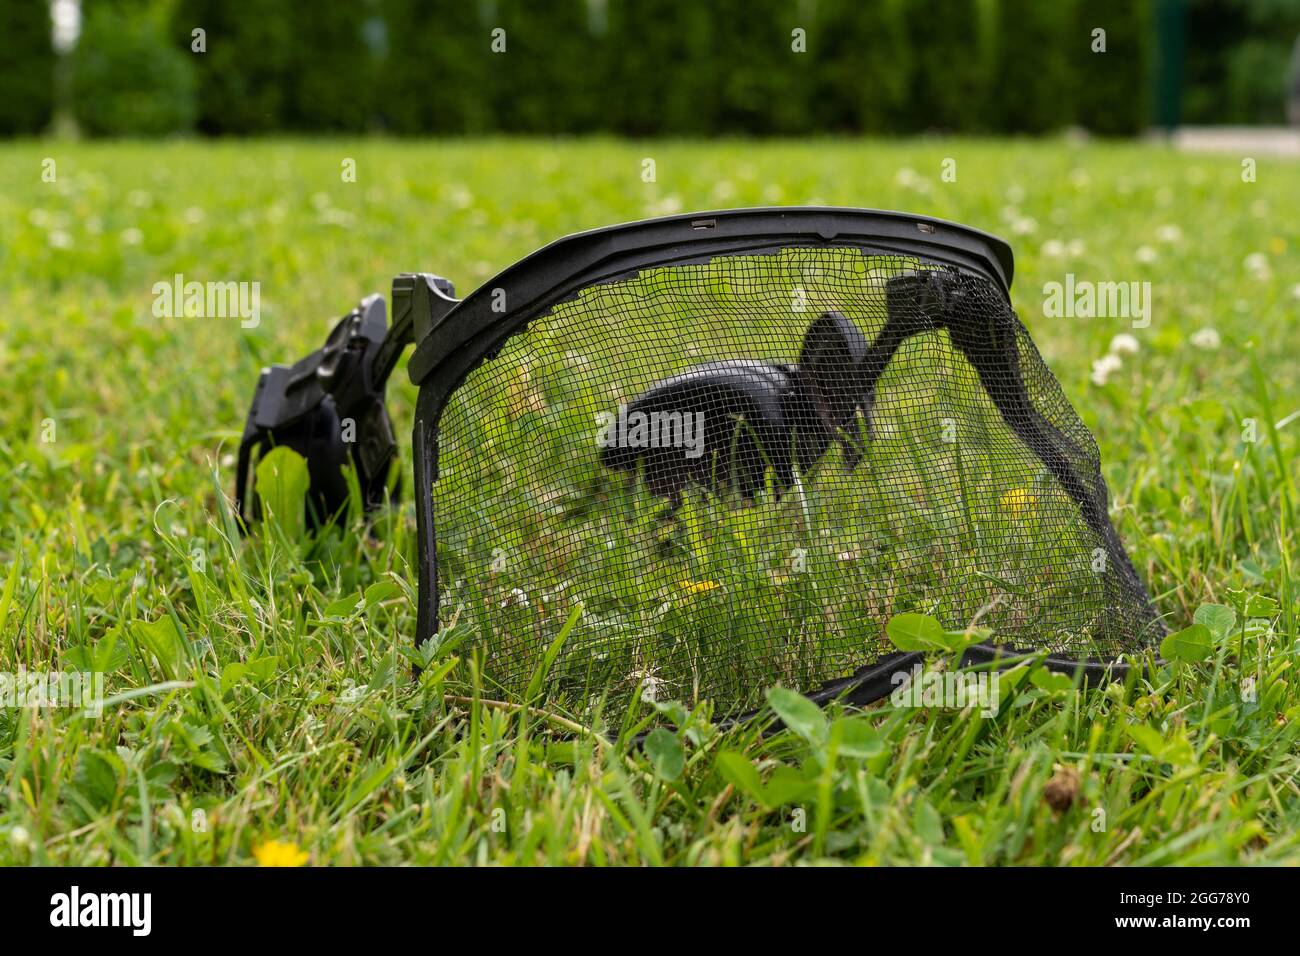 Kettensäge Helm Sicherheitsnetz fallen auf dem grünen Rasen schwarzen Gesichtsschutz auf einem grünen Rasen platziert Stockfoto